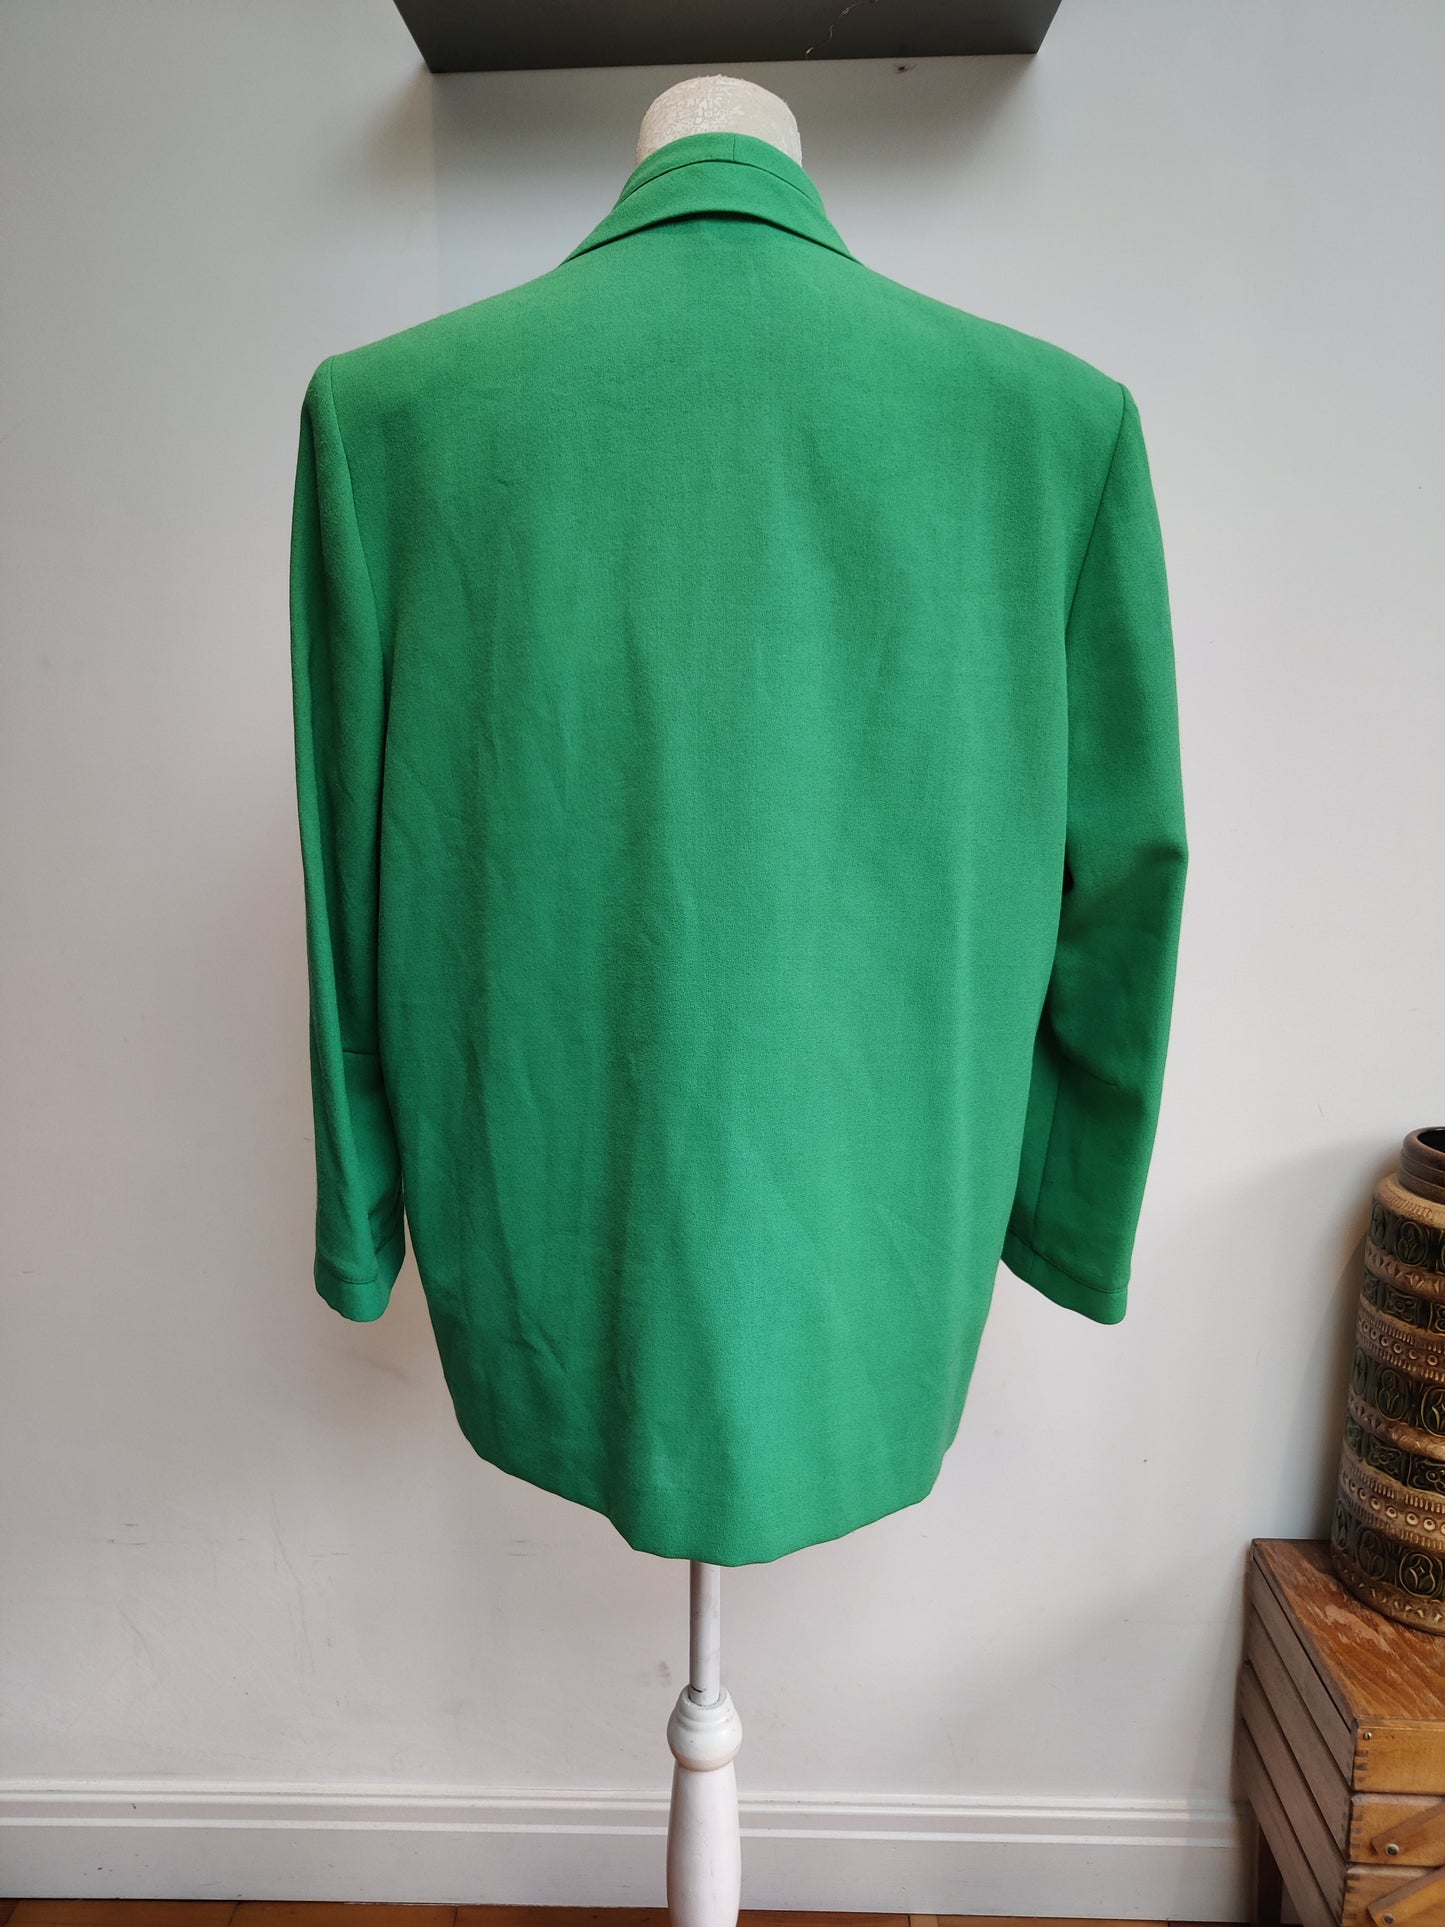 Vintage Jacques Vert jacket plus size